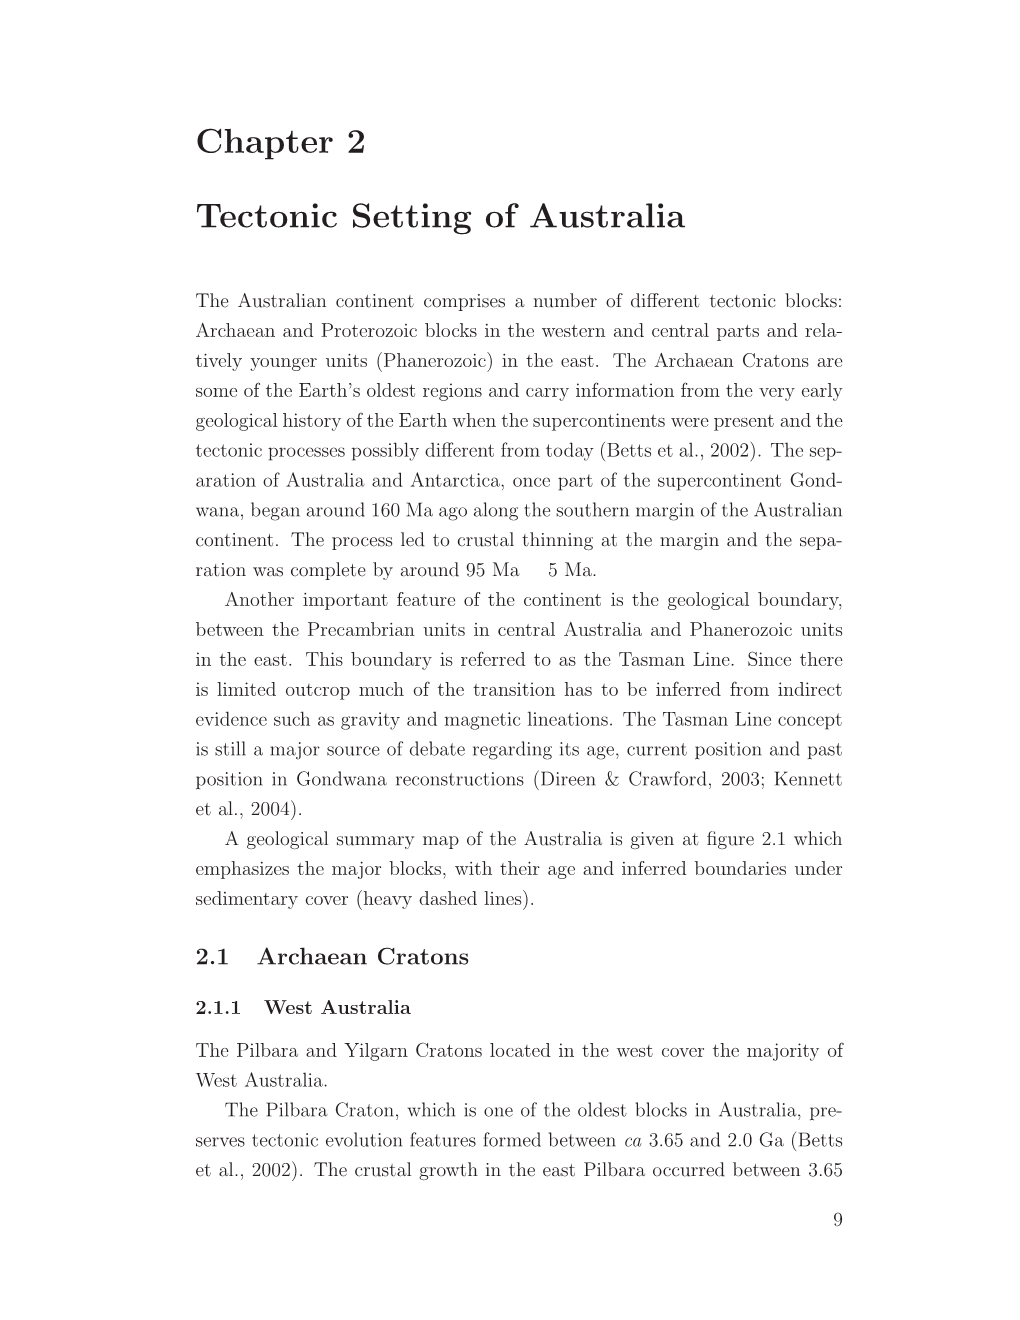 Chapter 2 Tectonic Setting of Australia